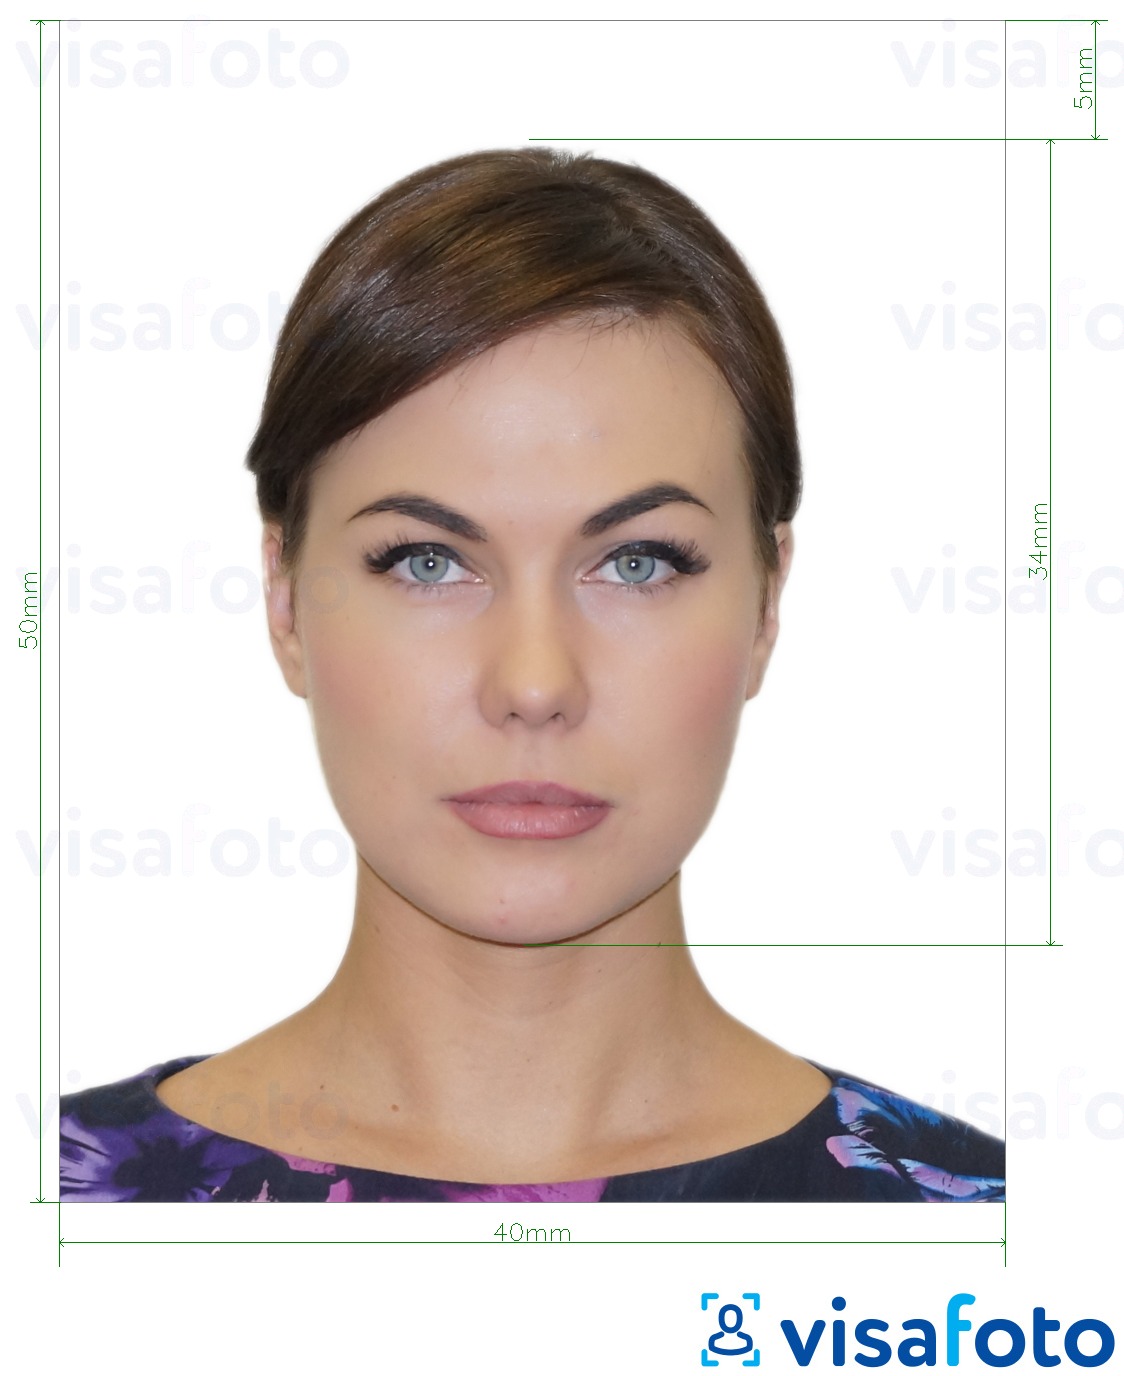 Primjer fotografije za E-viza za Albaniju 4x5 cm s točno određenom veličinom